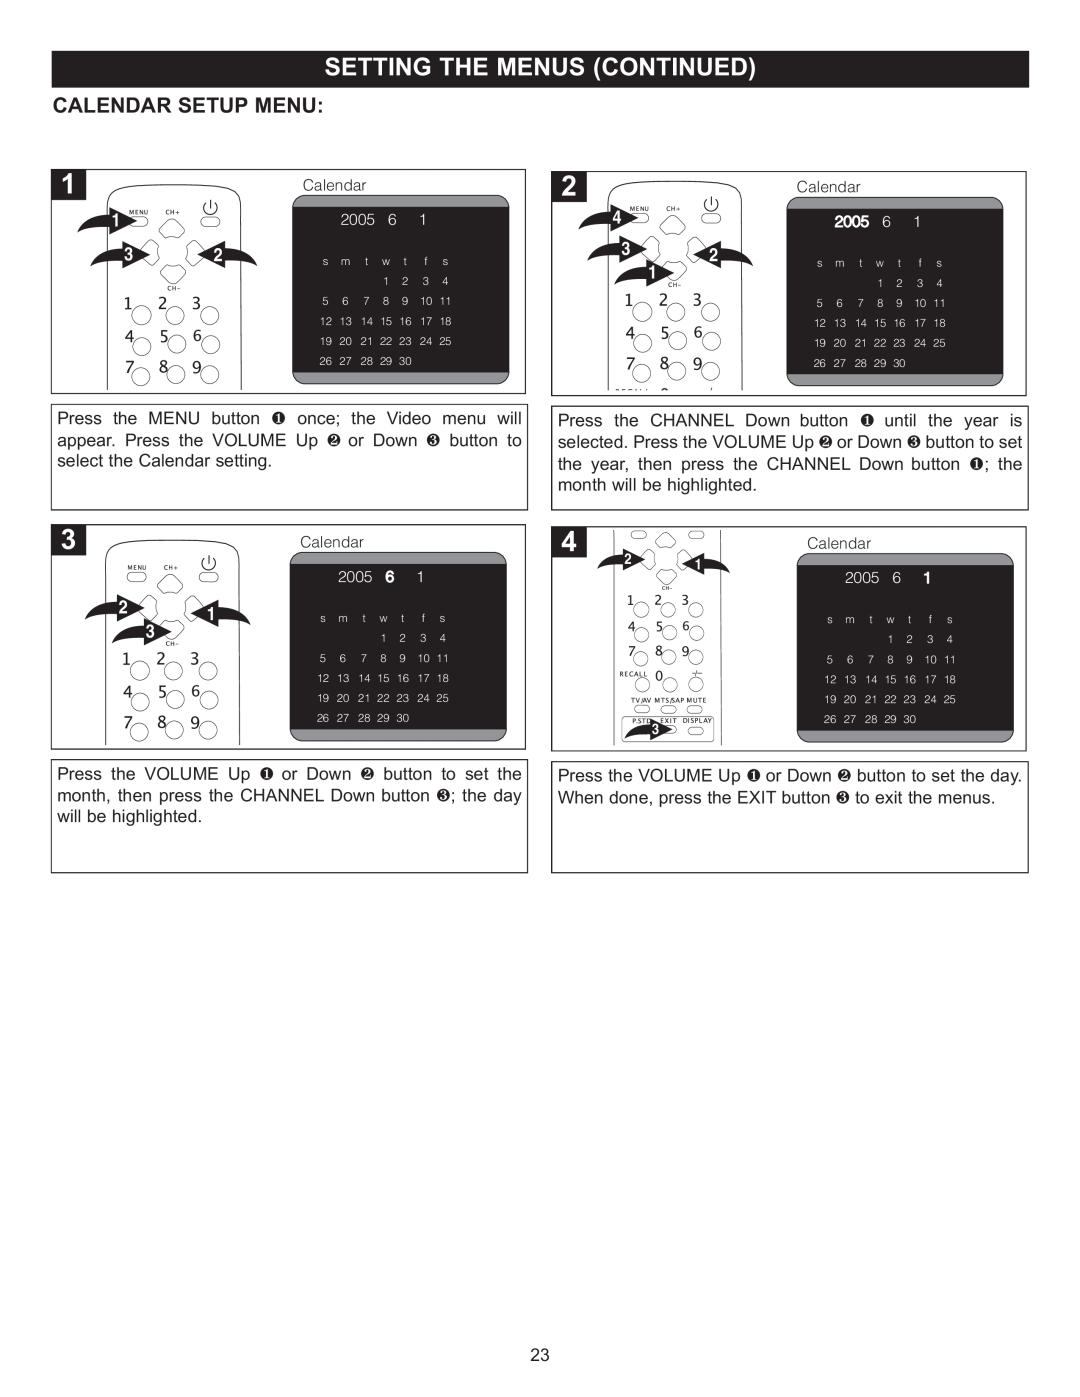 Memorex MT2024 manual Calendar Setup Menu 